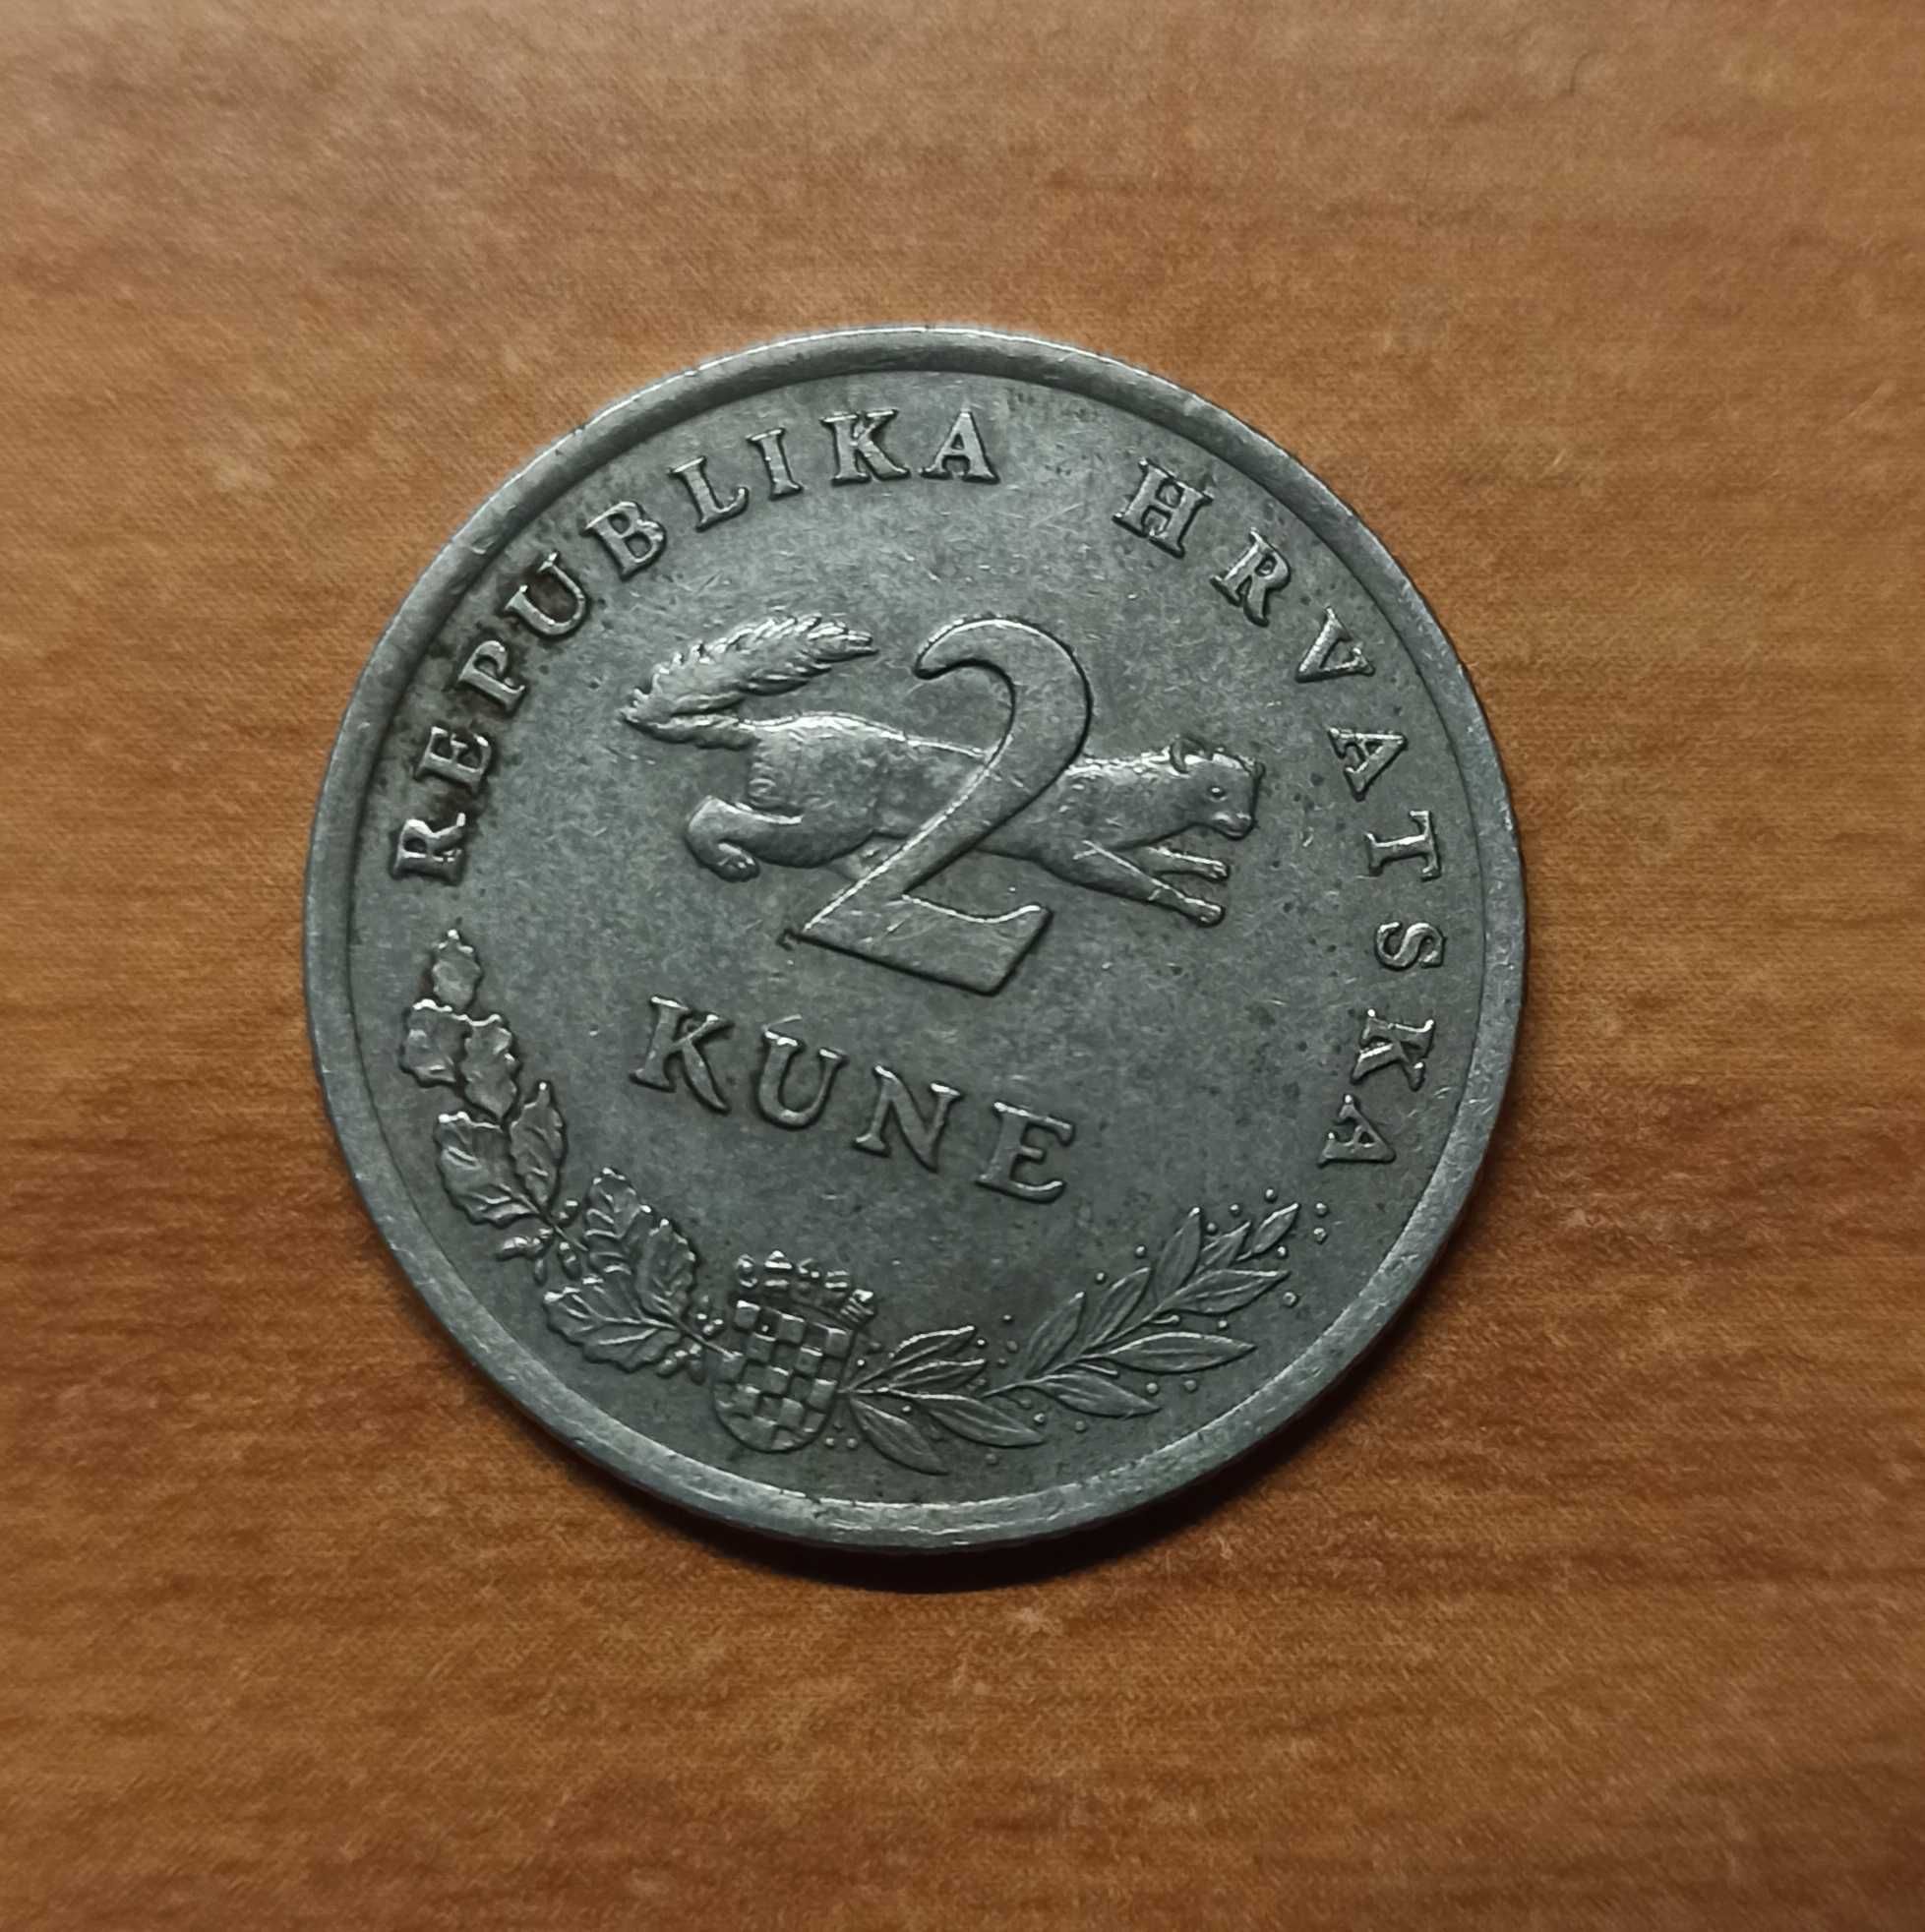 Moneta chorwacka - 2 kune 1993r.